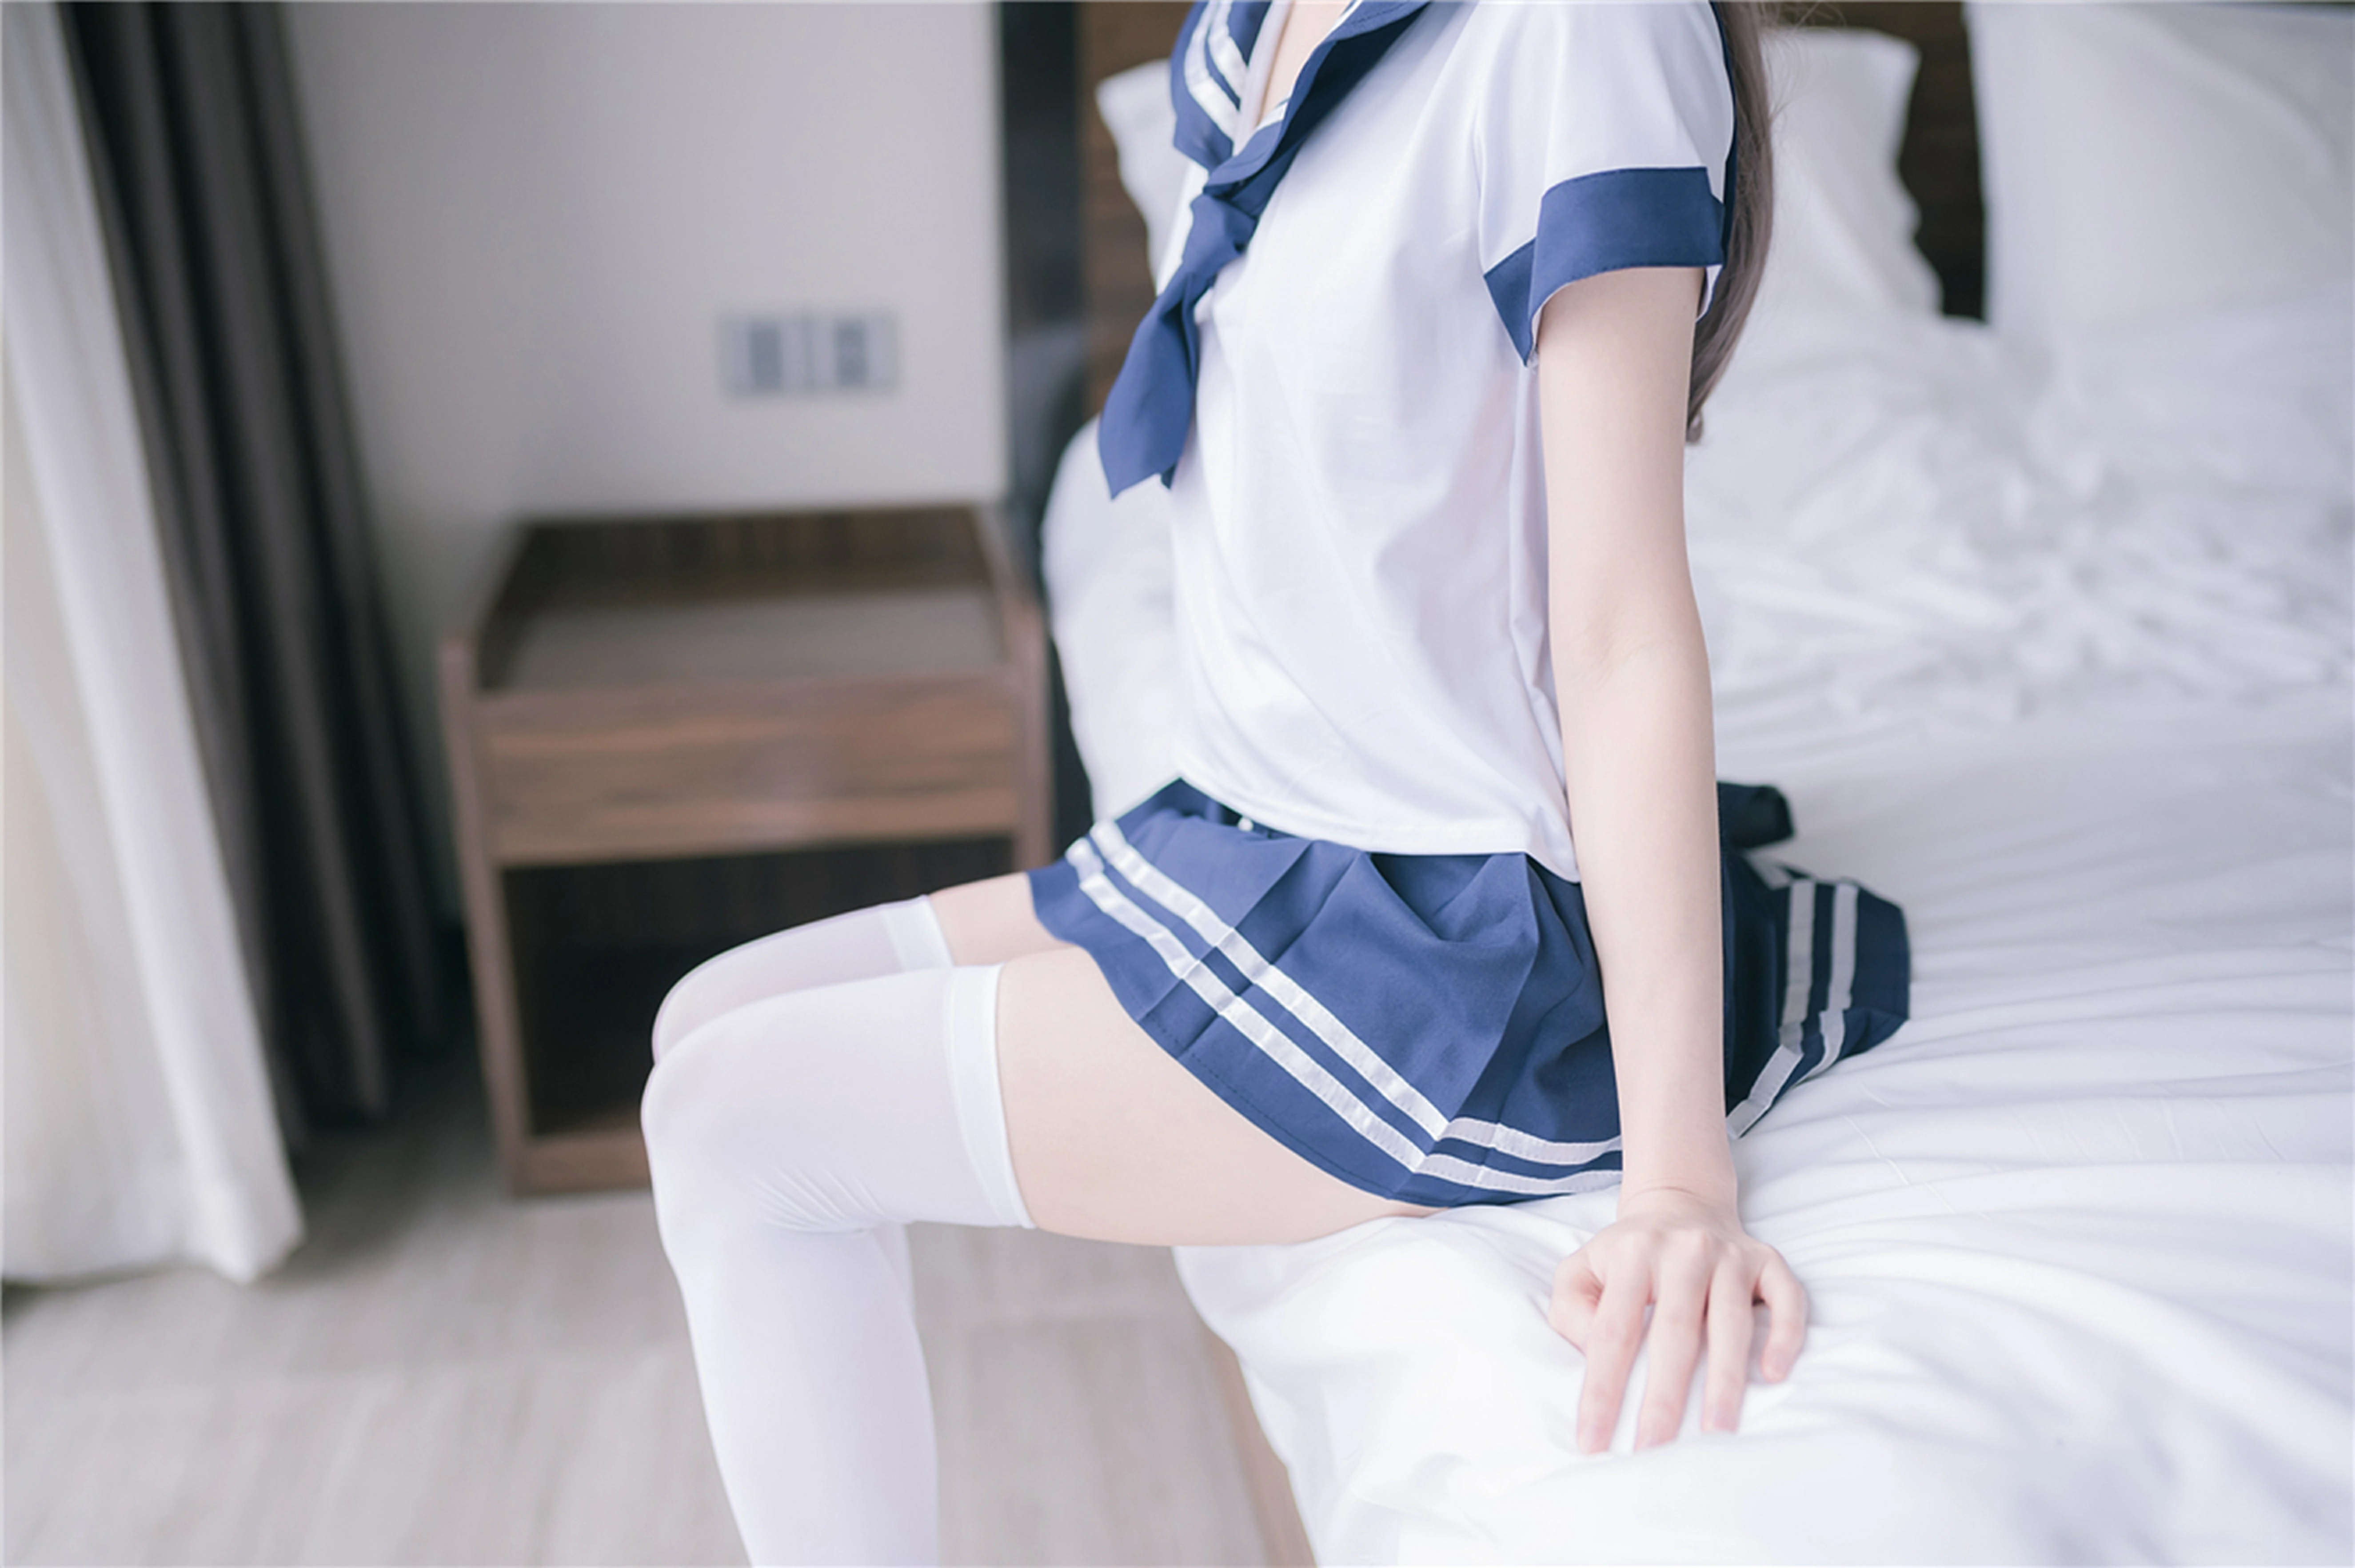 [风之领域]NO.197 清纯萝莉小学妹 日本高中女生制服与短裙加白色丝袜美腿性感私房写真集,